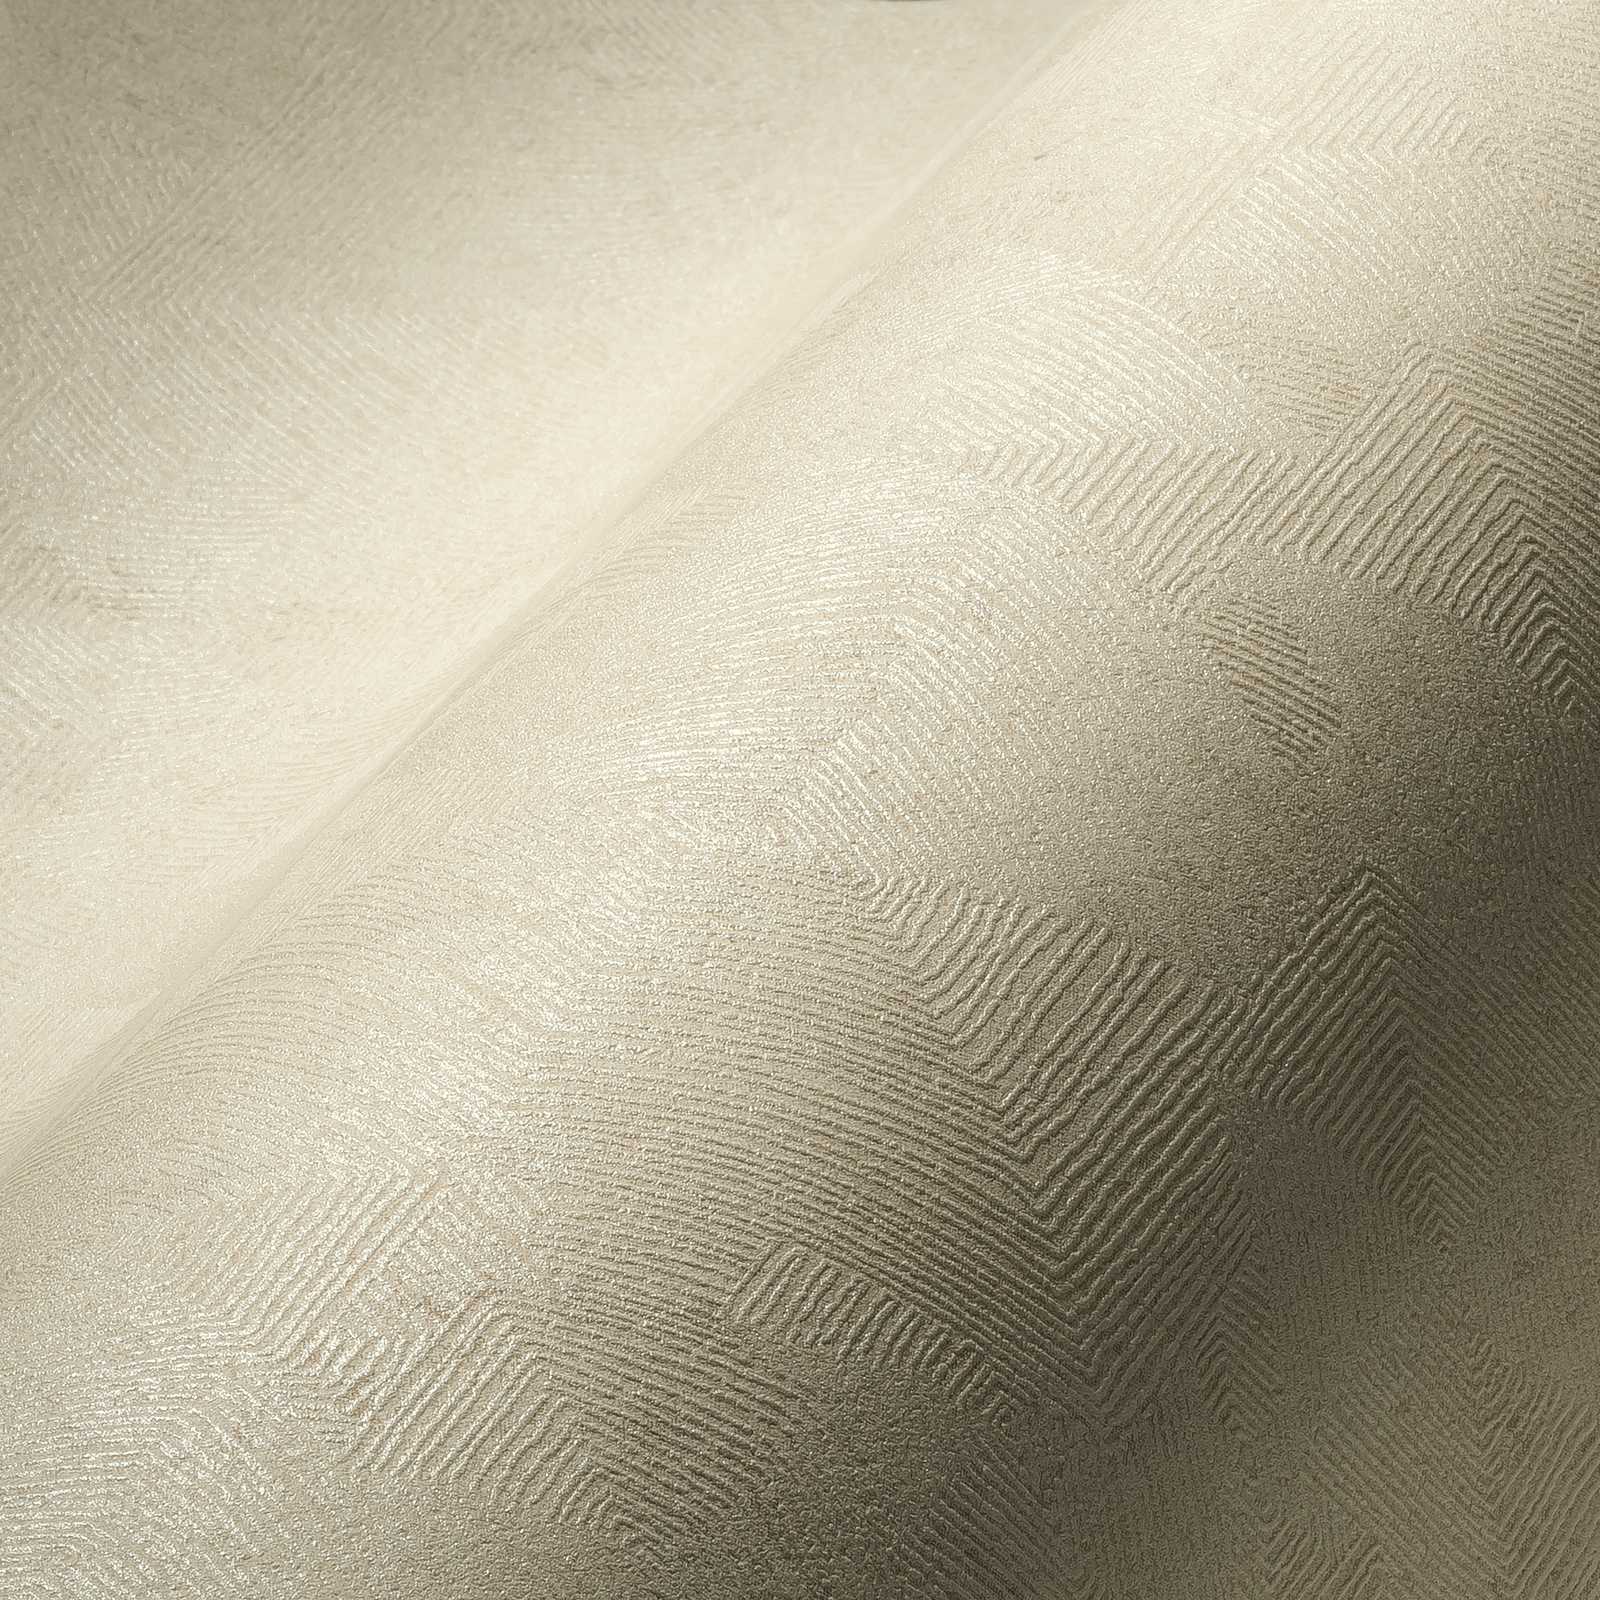             Melange wallpaper with graphic structure in ethnic look - beige, metallic
        